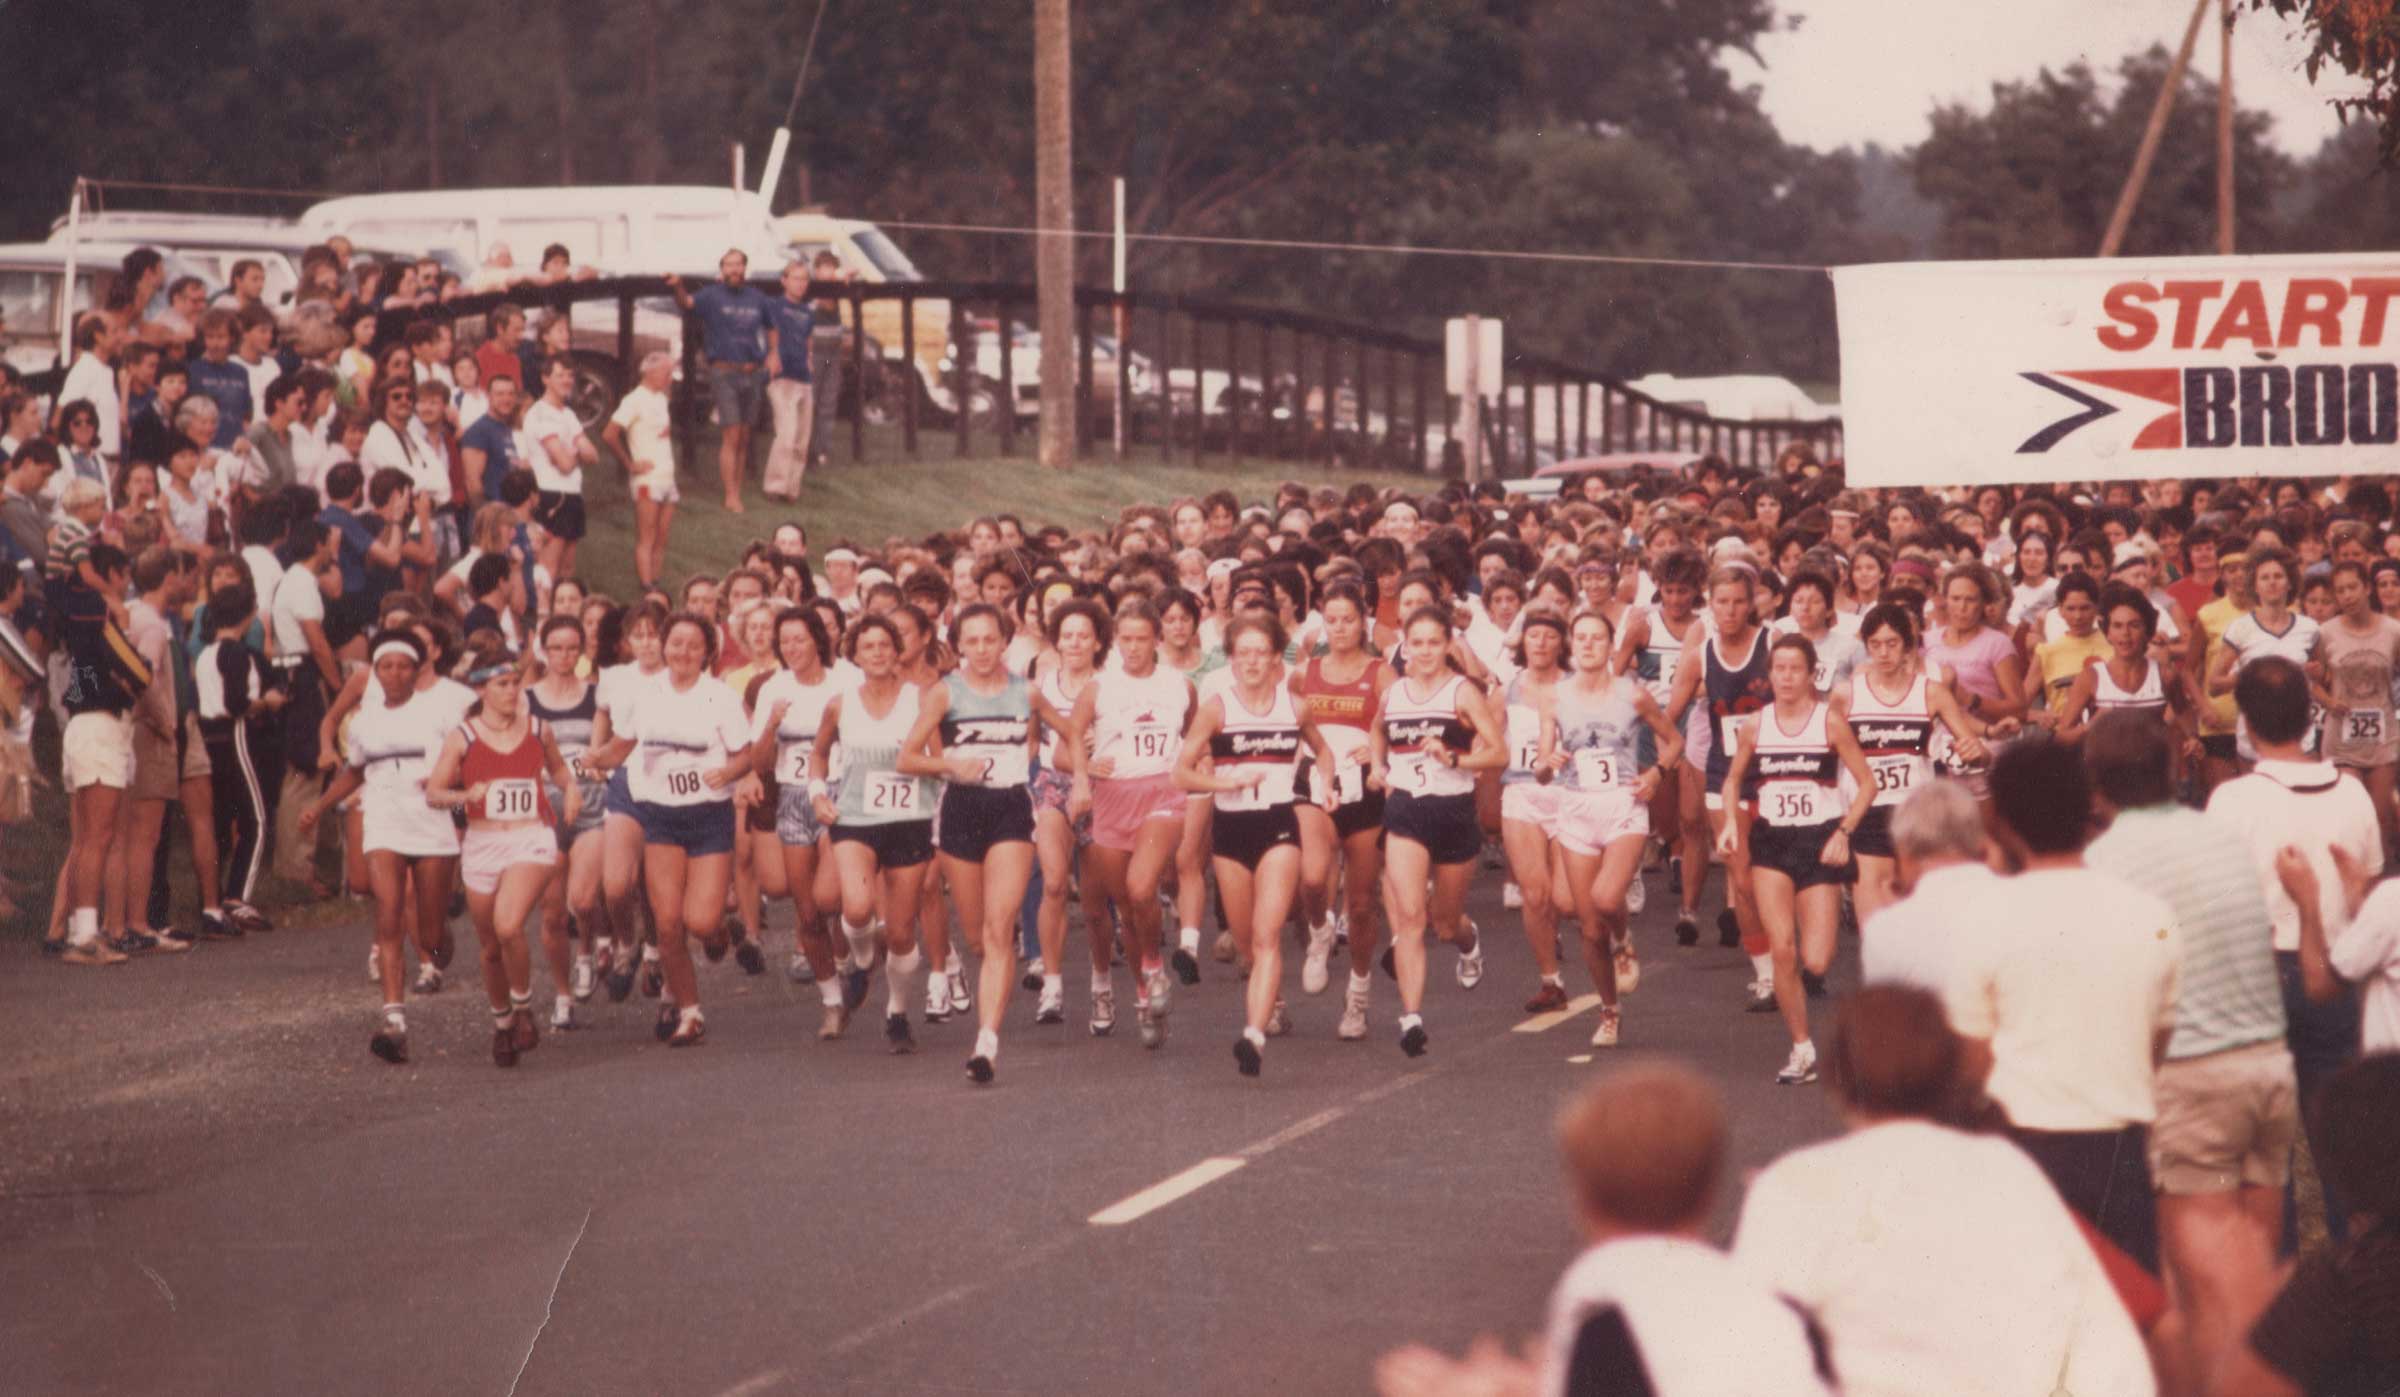 Hundreds of women running a race